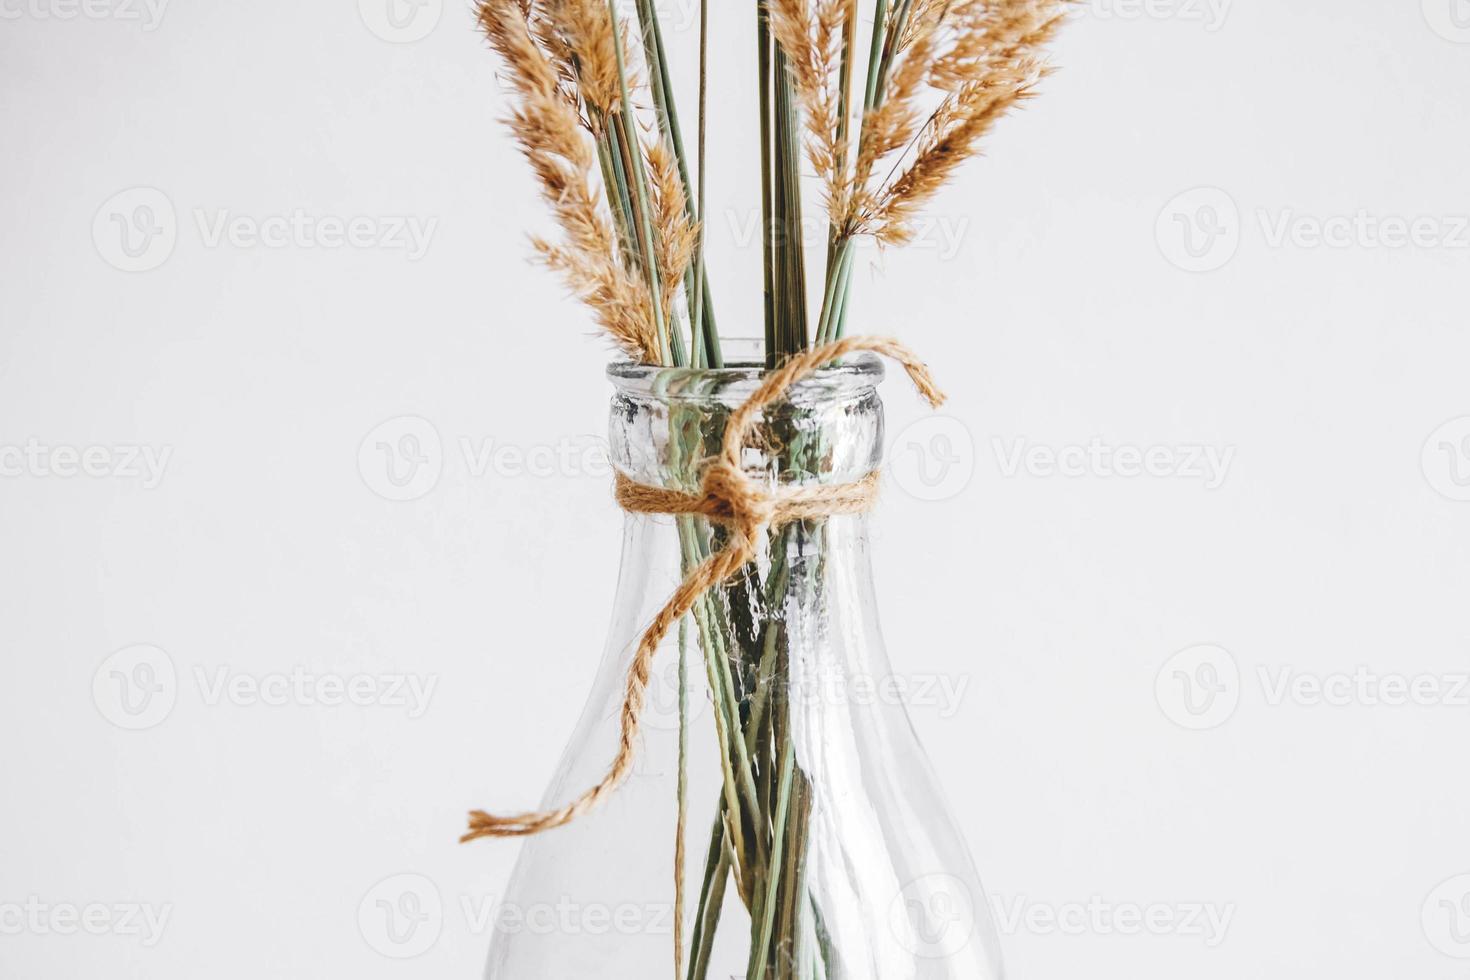 natureza morta de um buquê de flores secas em uma garrafa de vidro sobre uma mesa de madeira foto